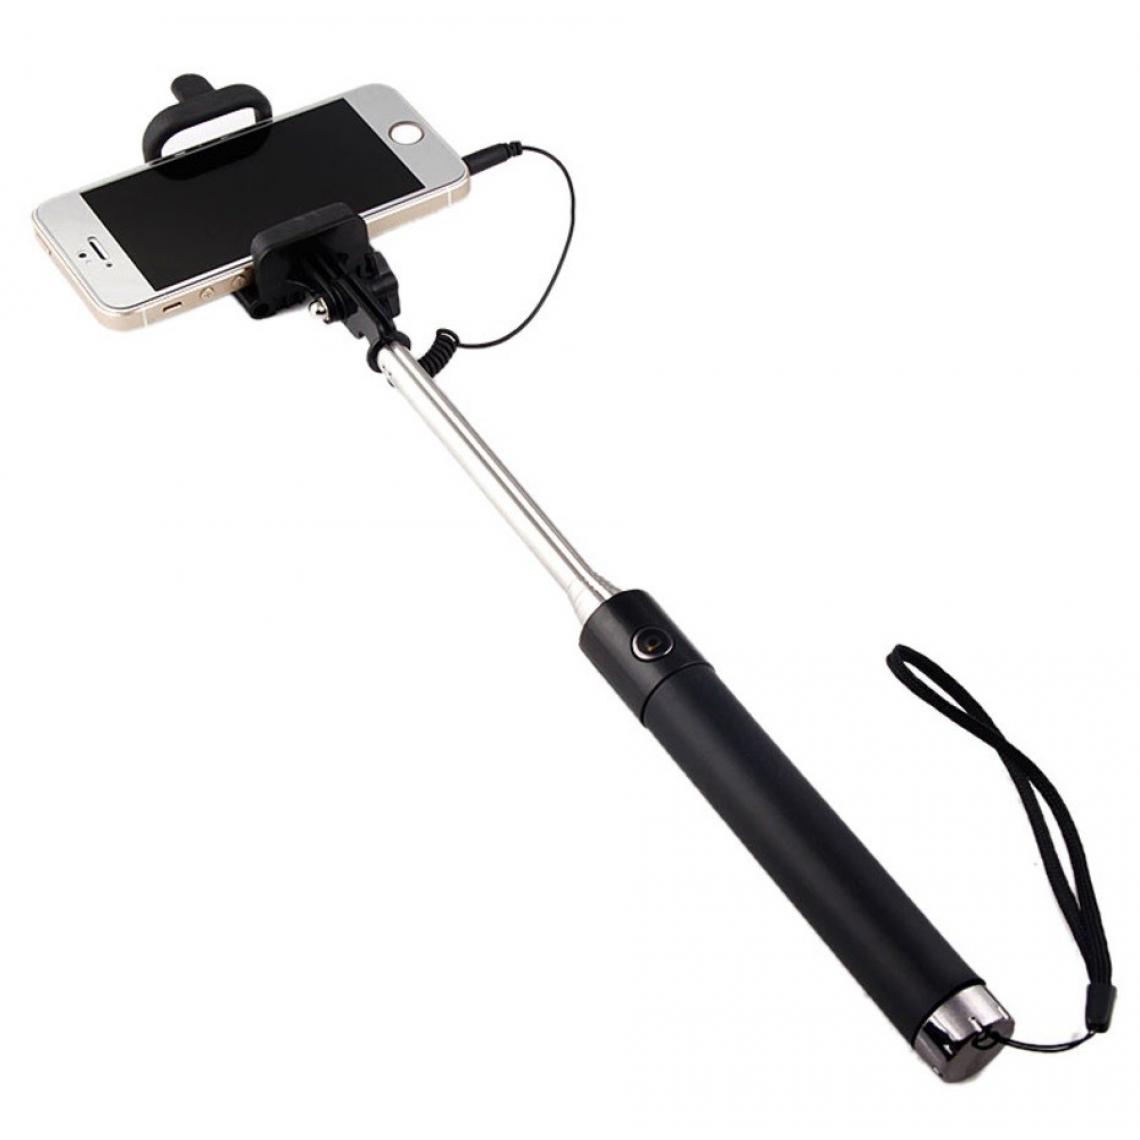 Shot - Perche Selfie Metal pour "WIKO Y61" Smartphone avec Cable Jack Selfie Stick Android IOS Reglable Bouton Photo (NOIR) - Autres accessoires smartphone